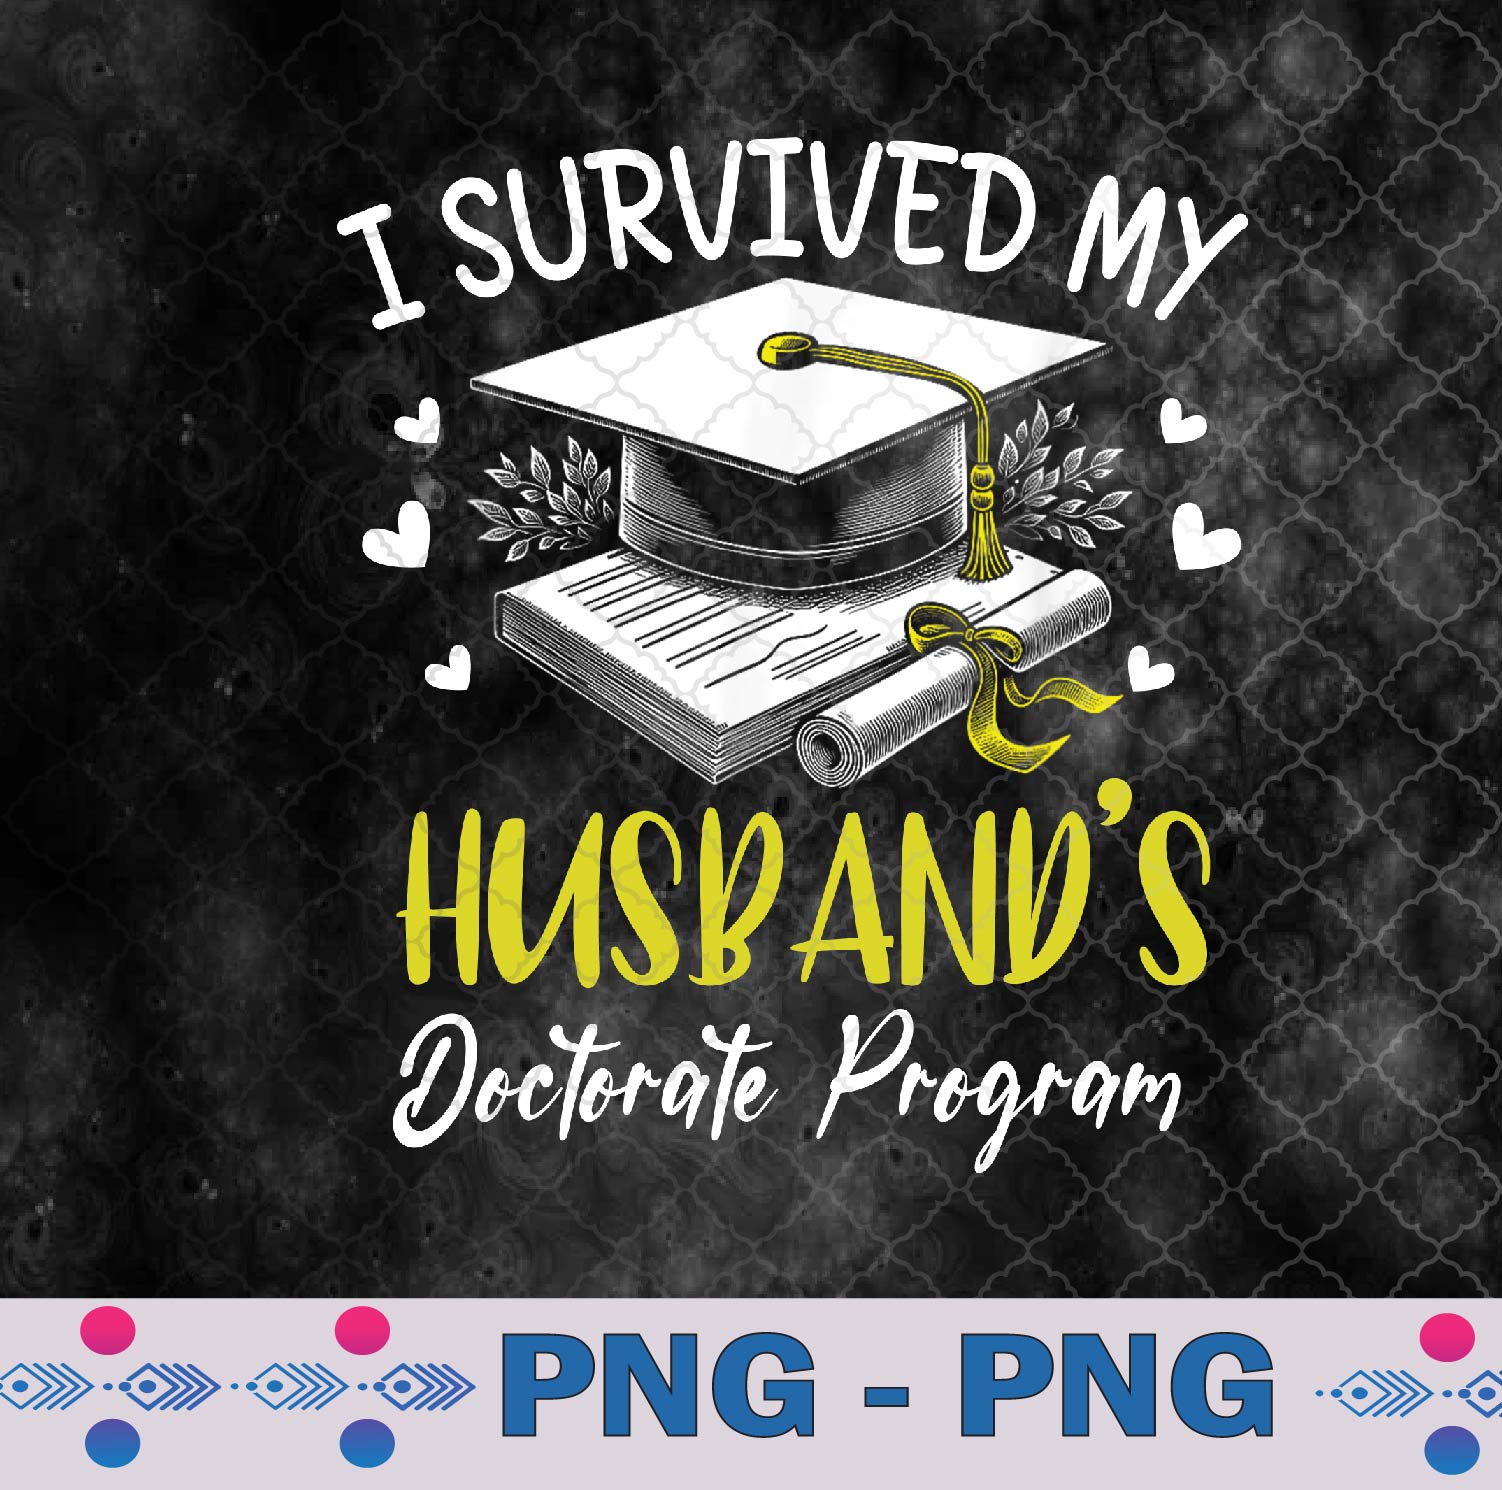 I Survived My Husband’s Doctorate Program Graduation Png, Sublimation Design